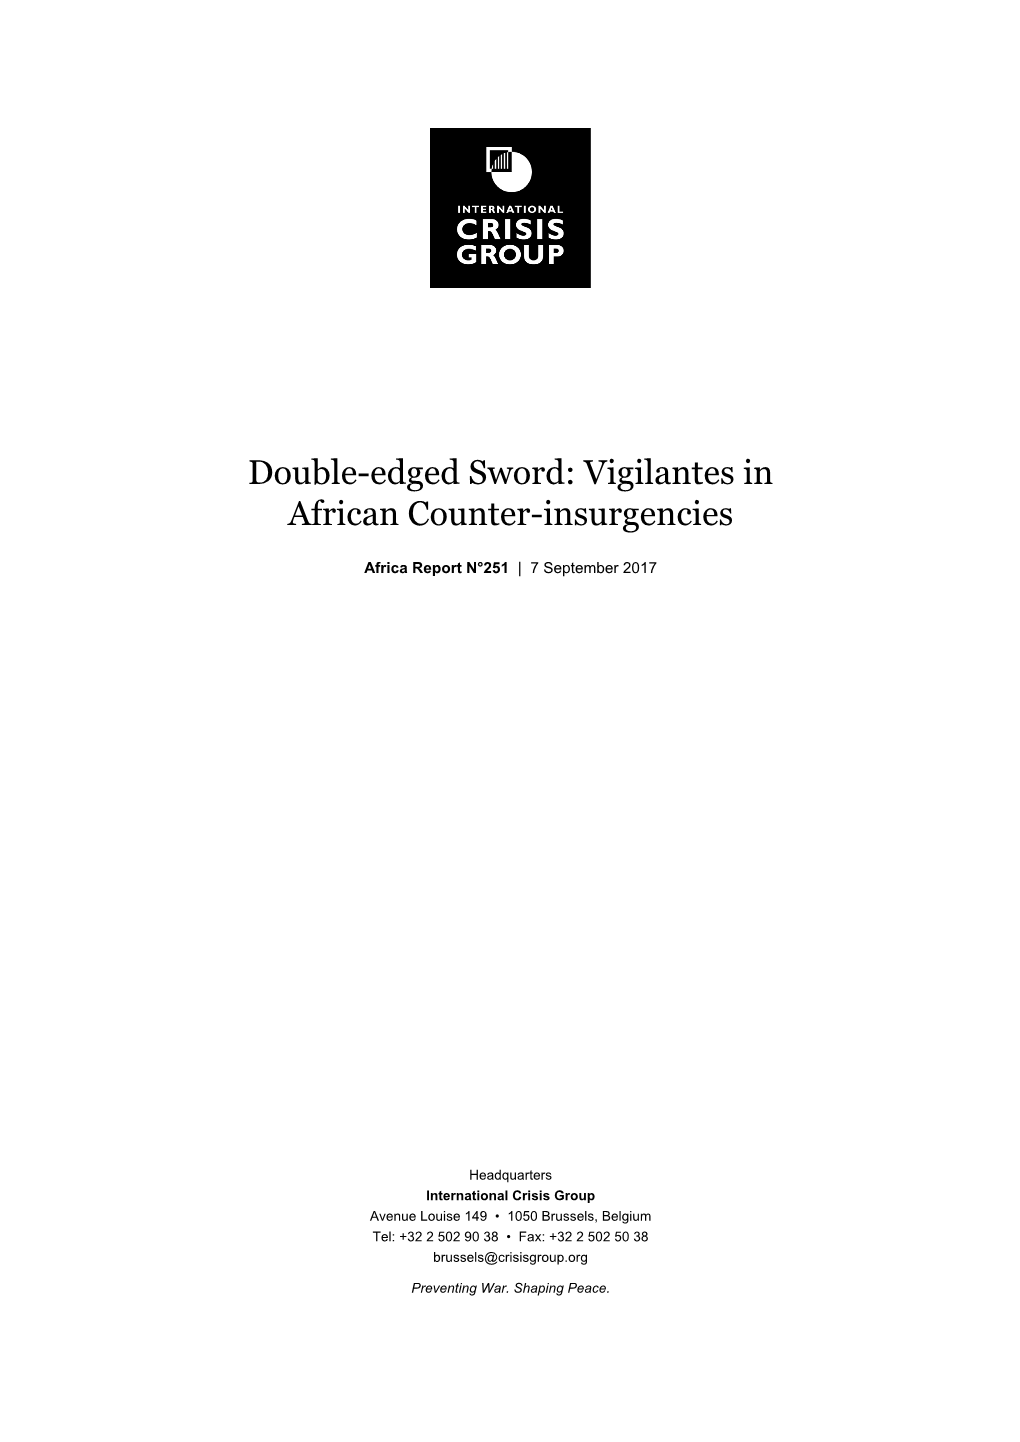 Double-Edged Sword: Vigilantes in African Counter-Insurgencies